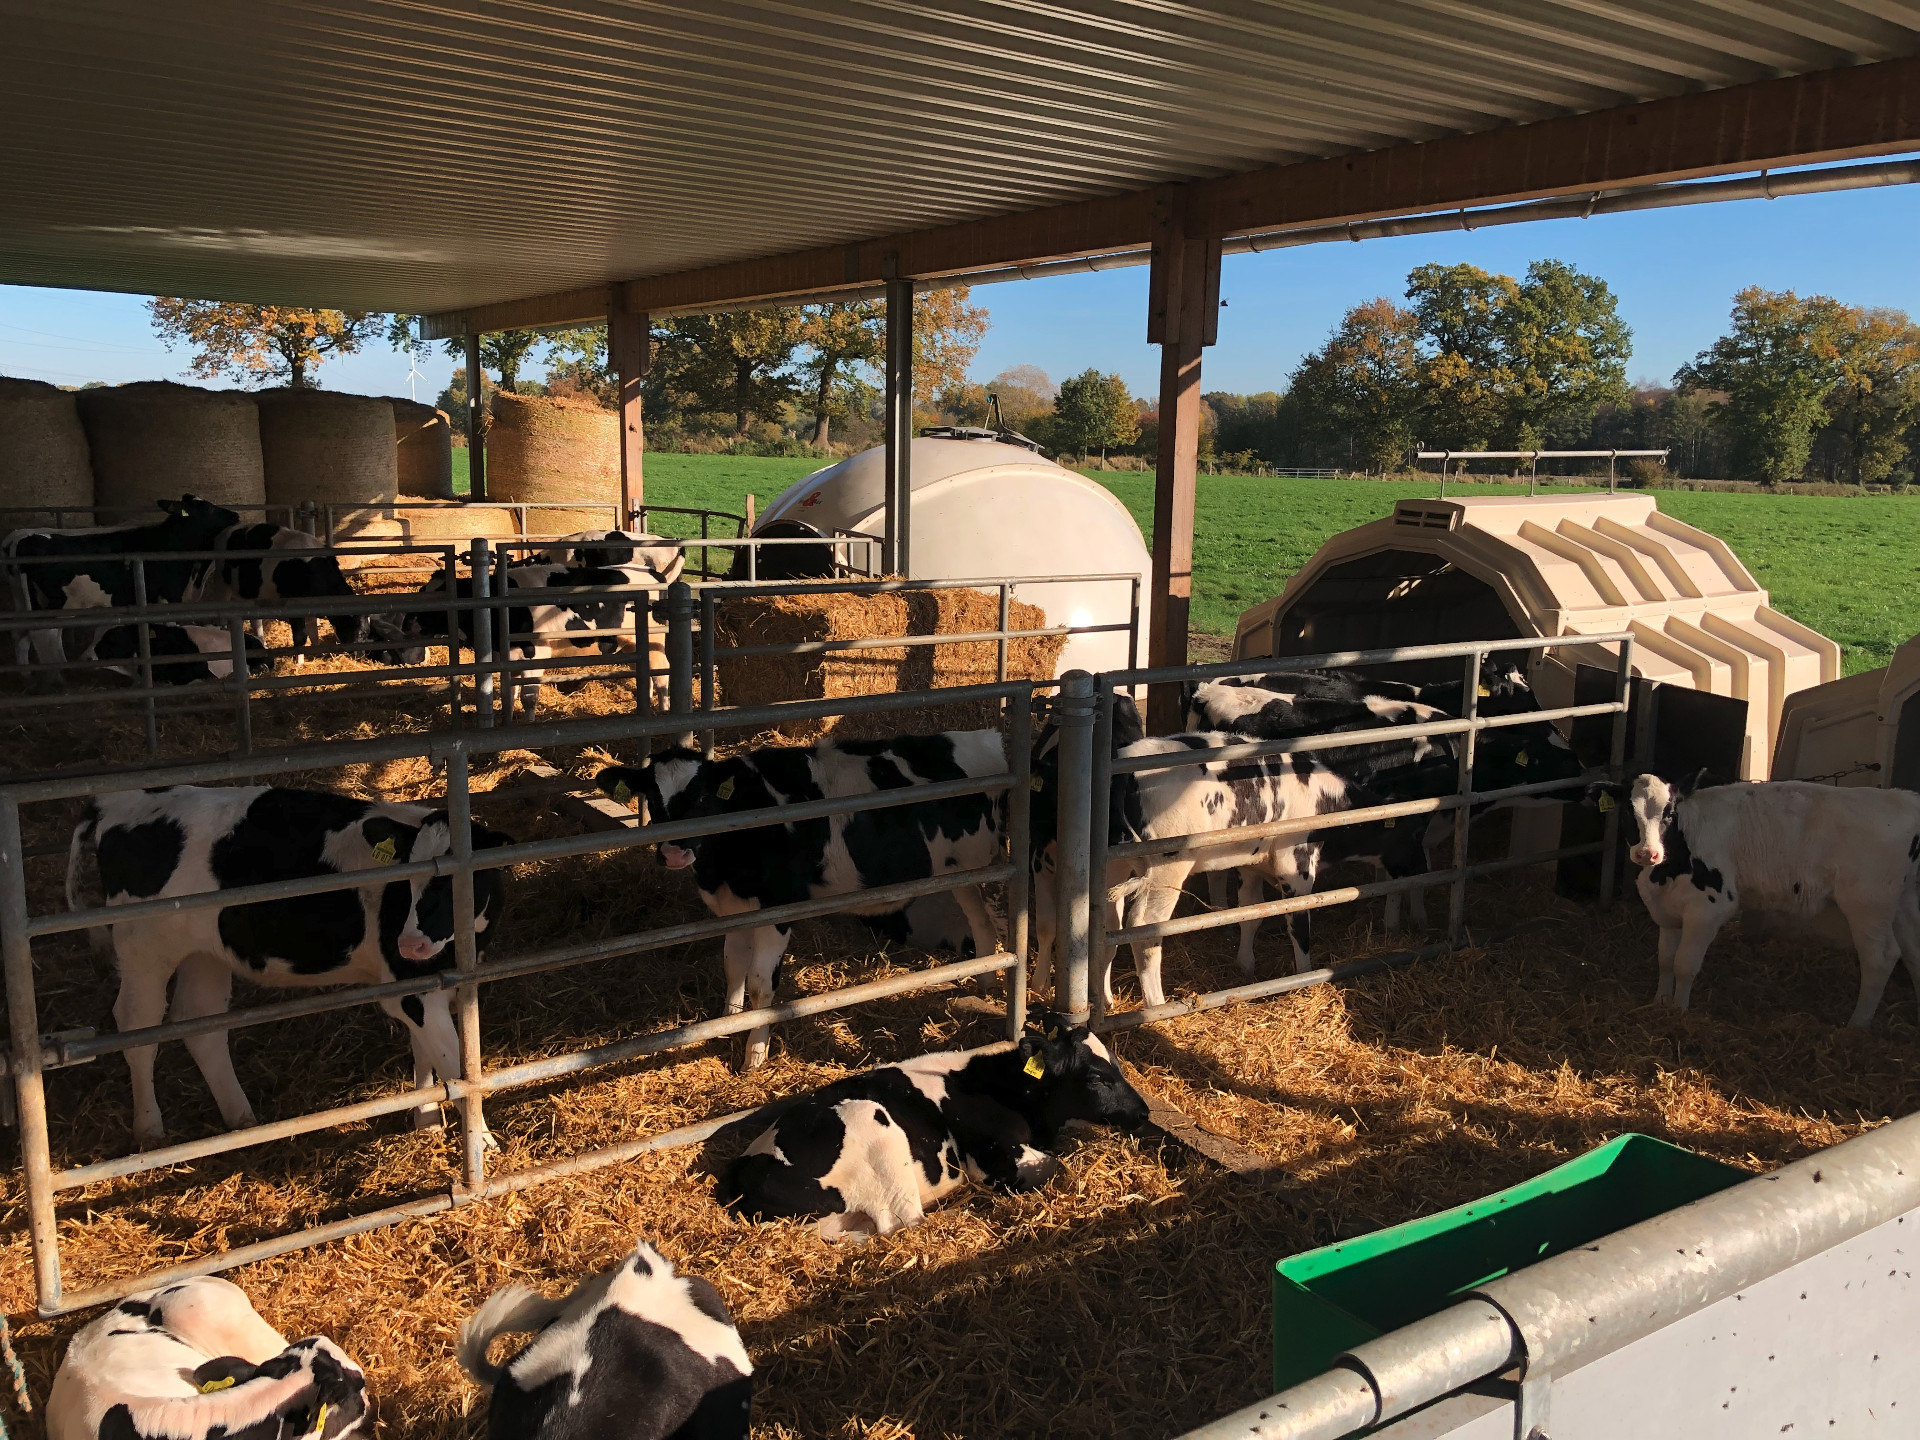 犊牛根据气候条件决定呆在哪里：在圆顶牛舍里或在户外。